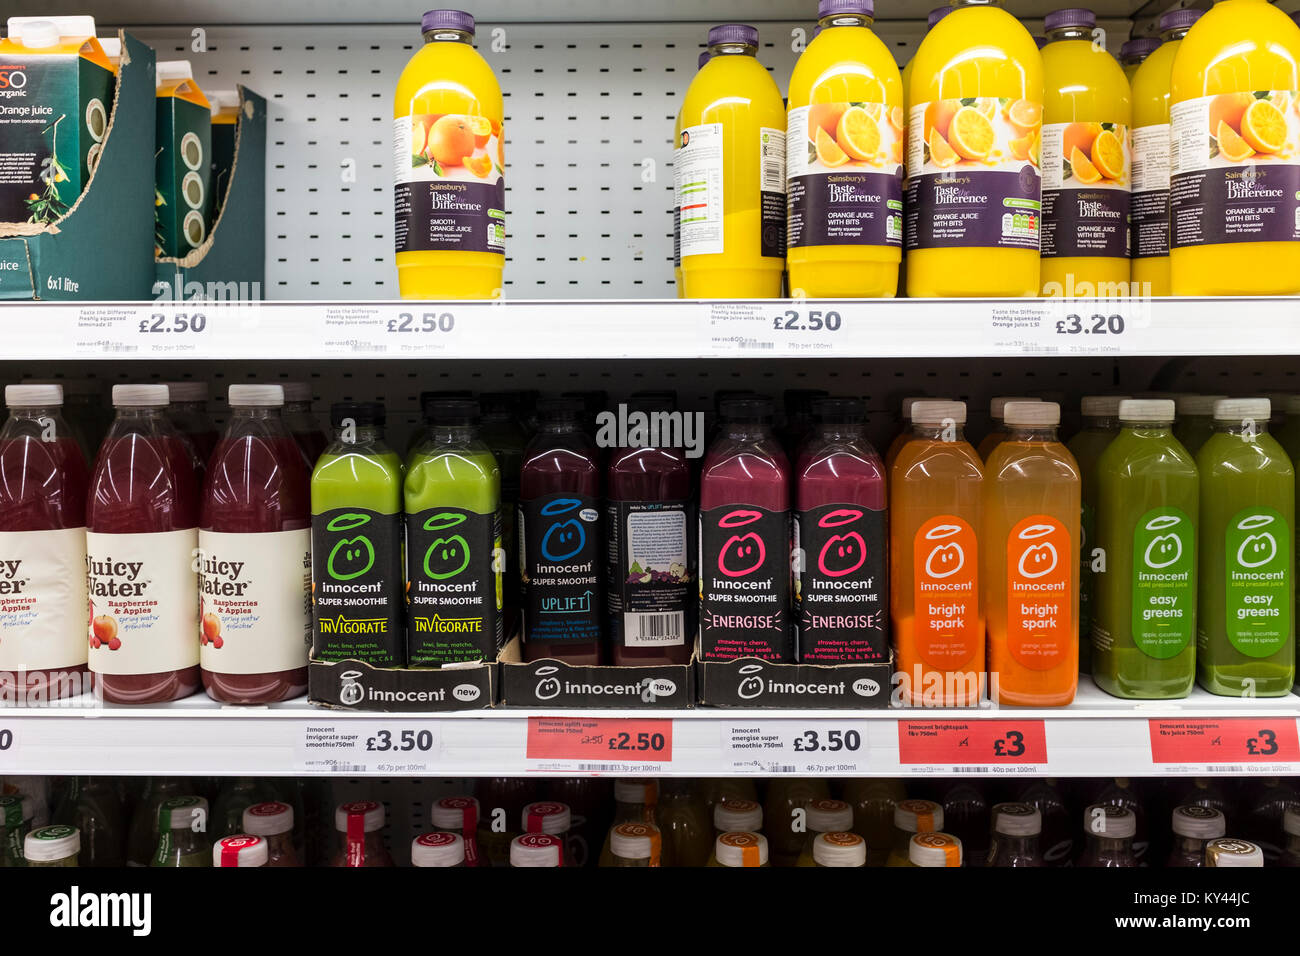 Frullato di innocenti e di altri succhi di frutta bottiglie in esposizione su scaffali del supermercato, REGNO UNITO Foto Stock